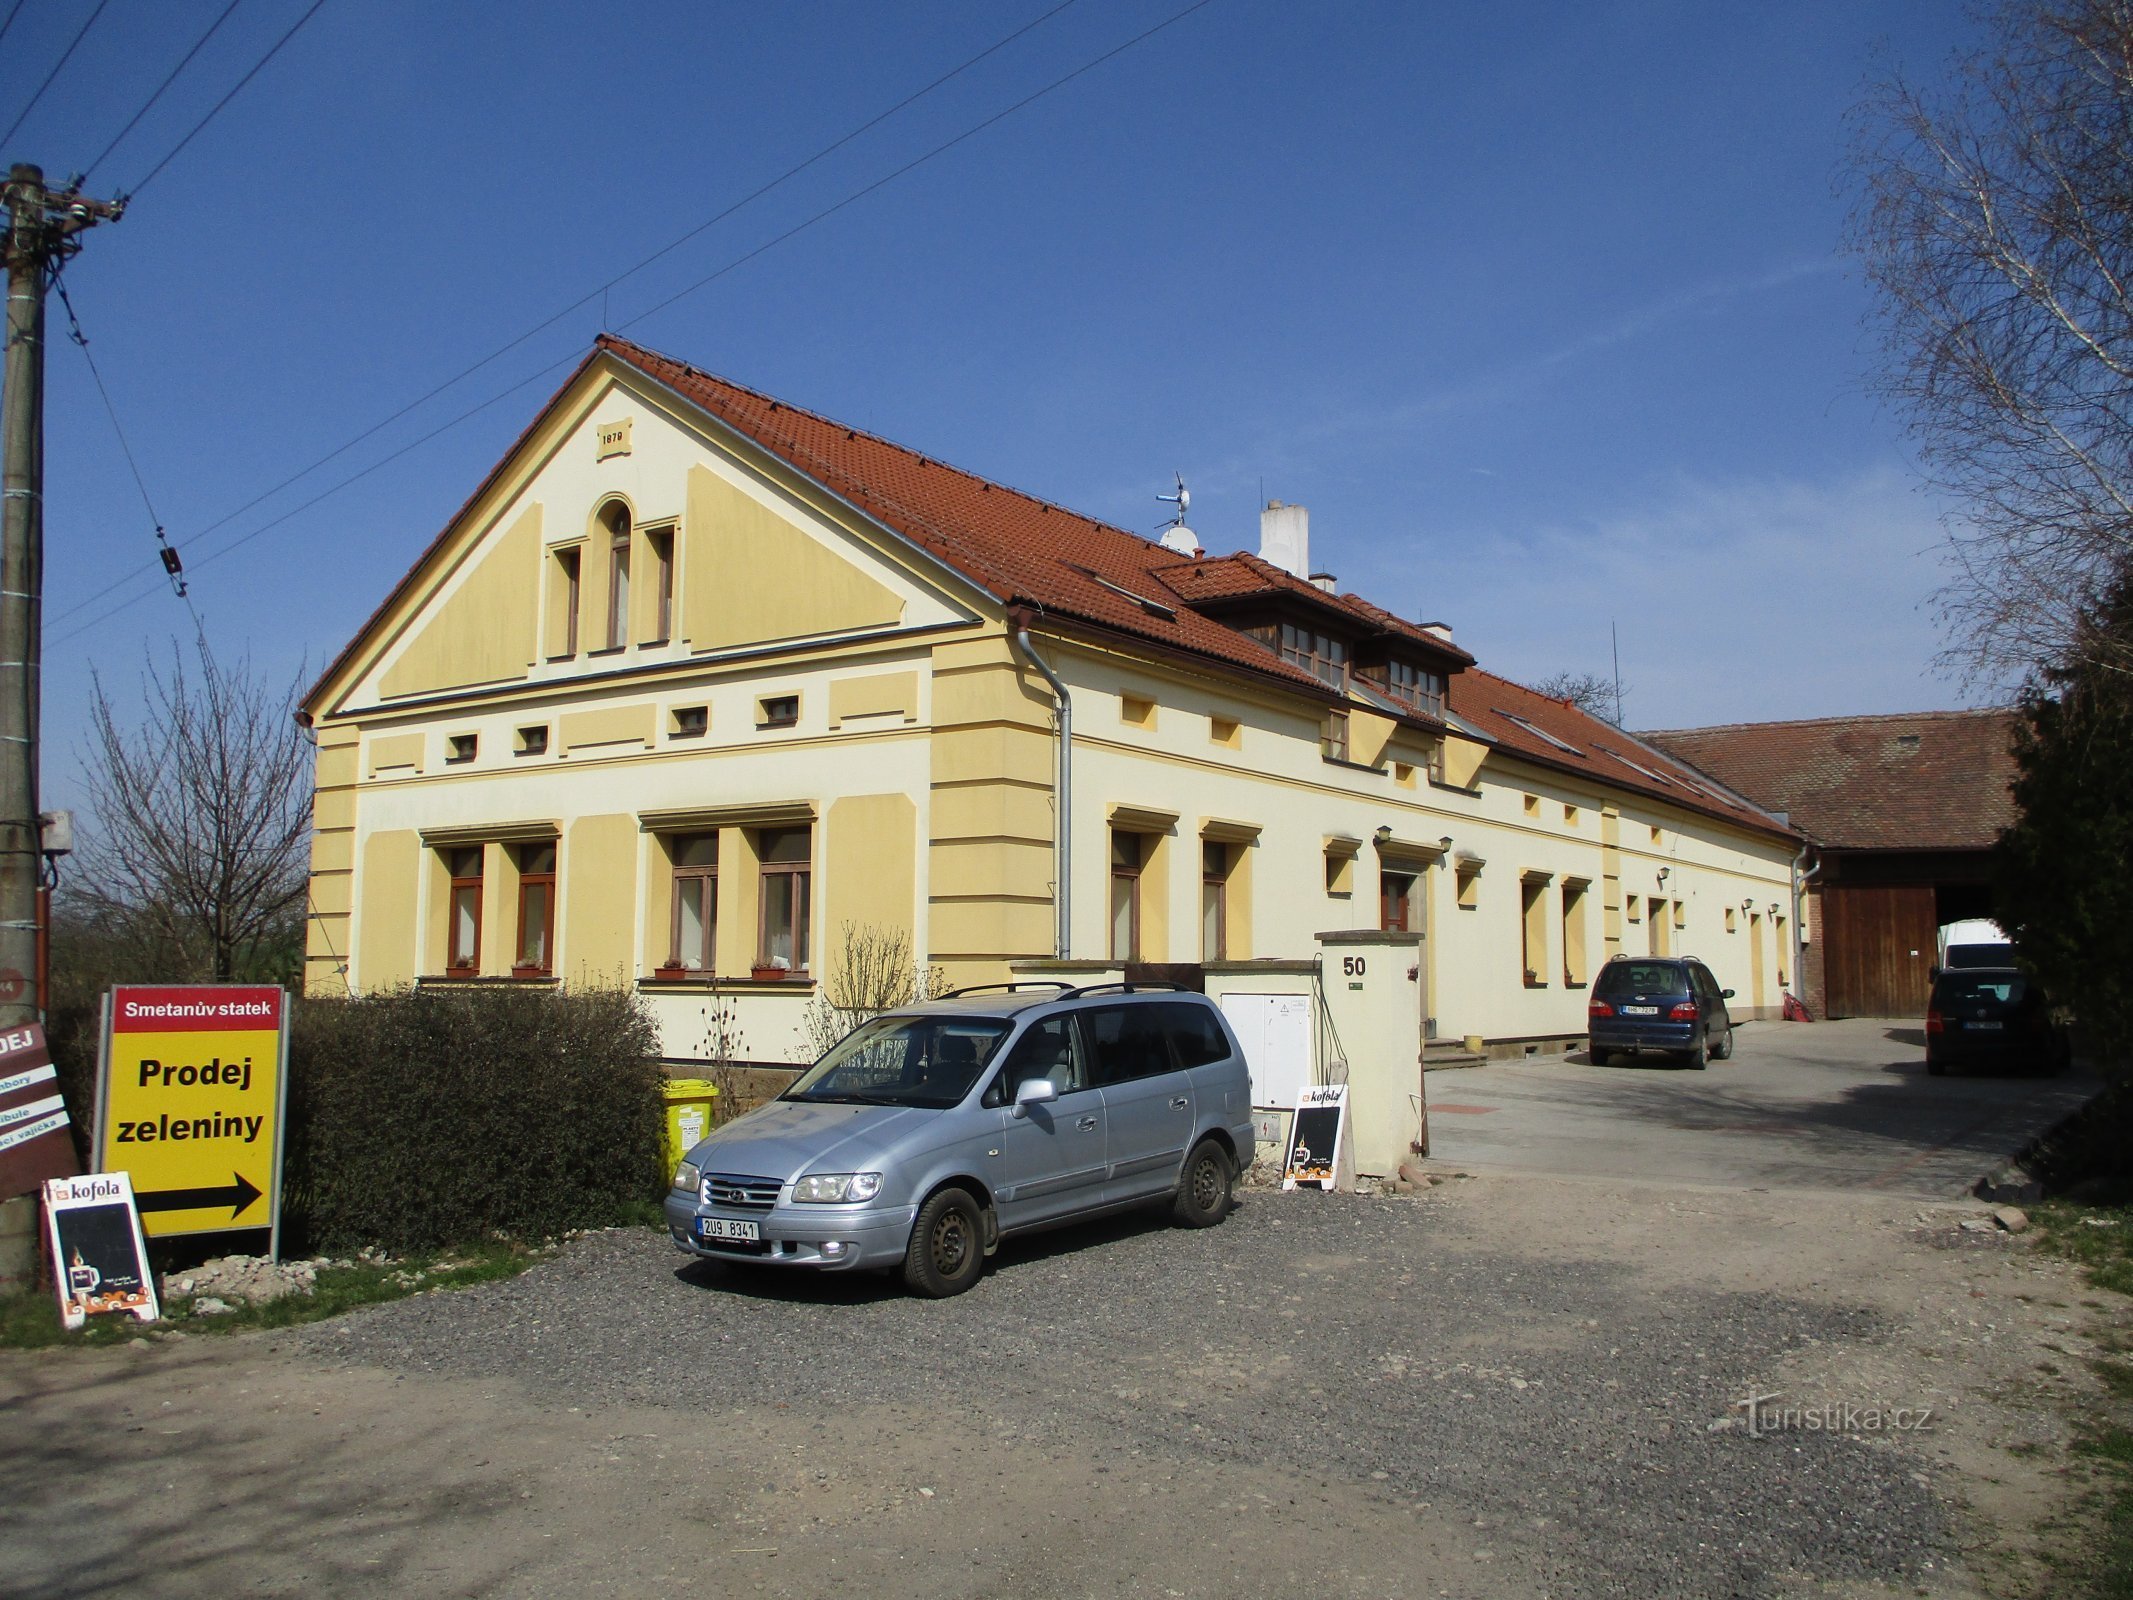 Klacovská nr. 50 (Hradec Králové)